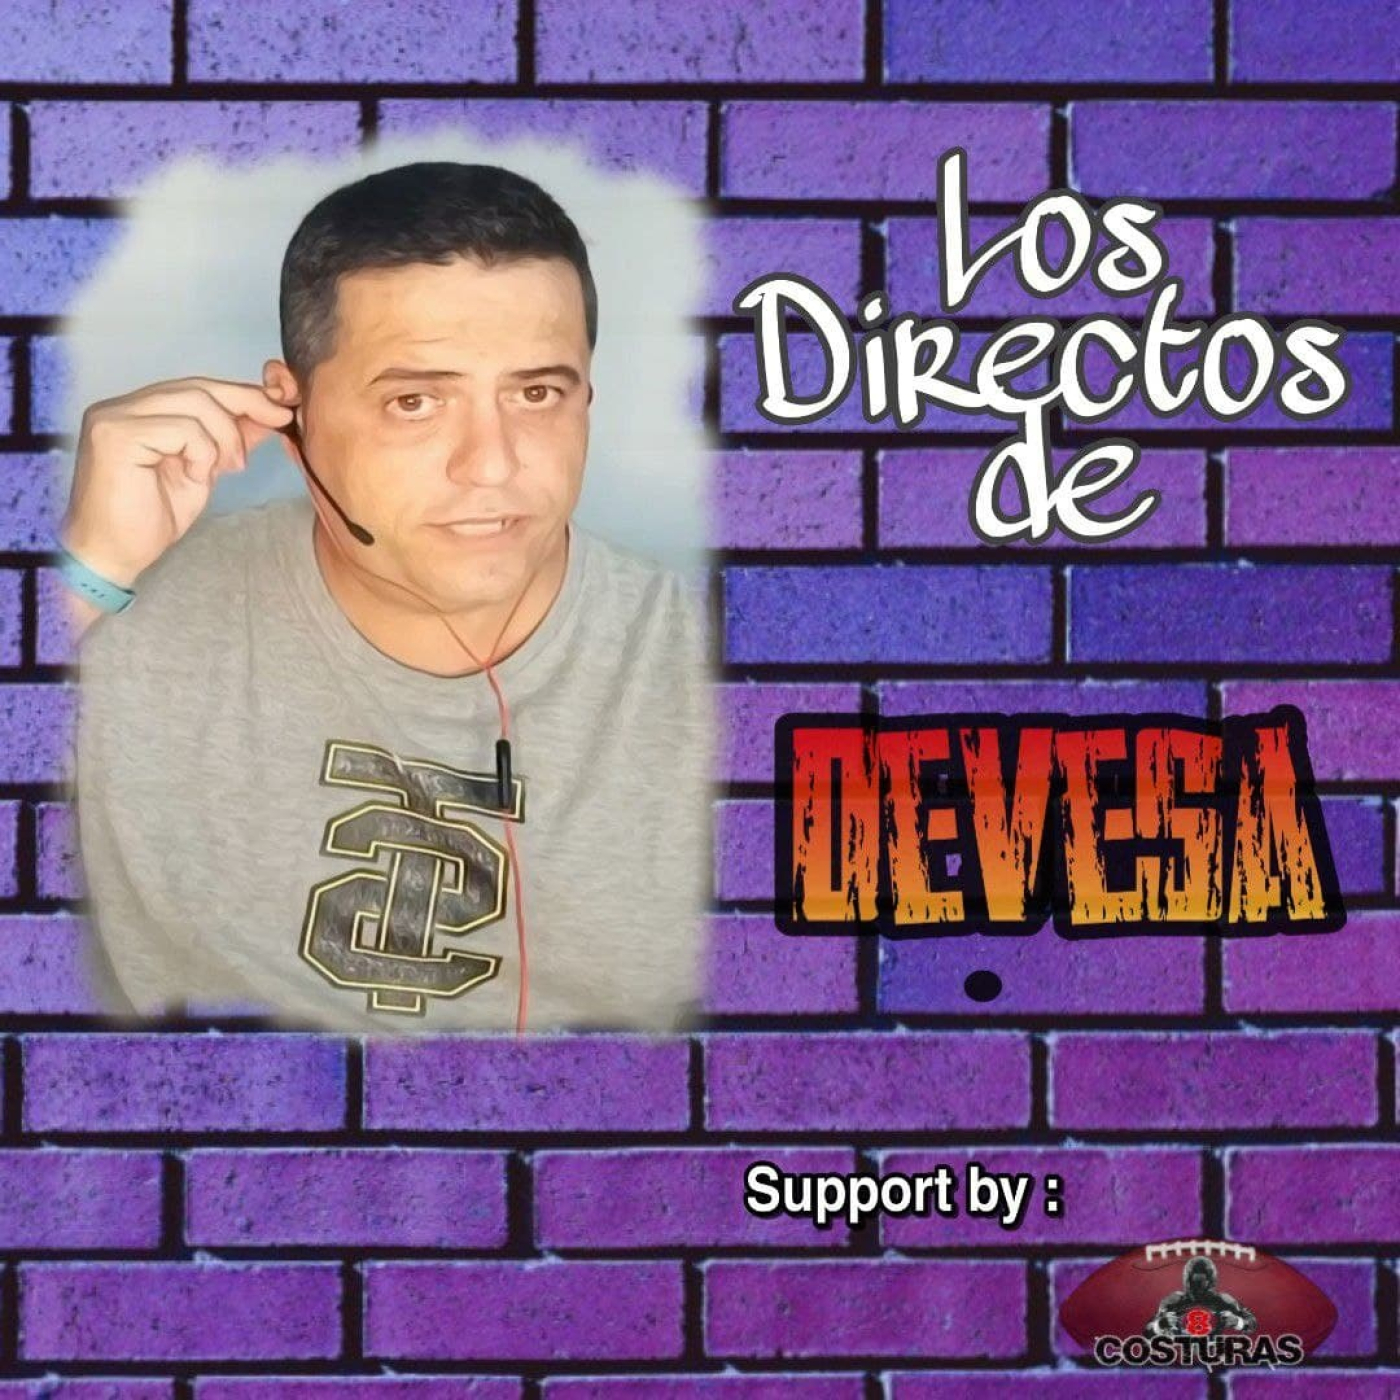 52-Los directos de Devesa en 8 Costuras. Entrevista a Elvys Núñez.